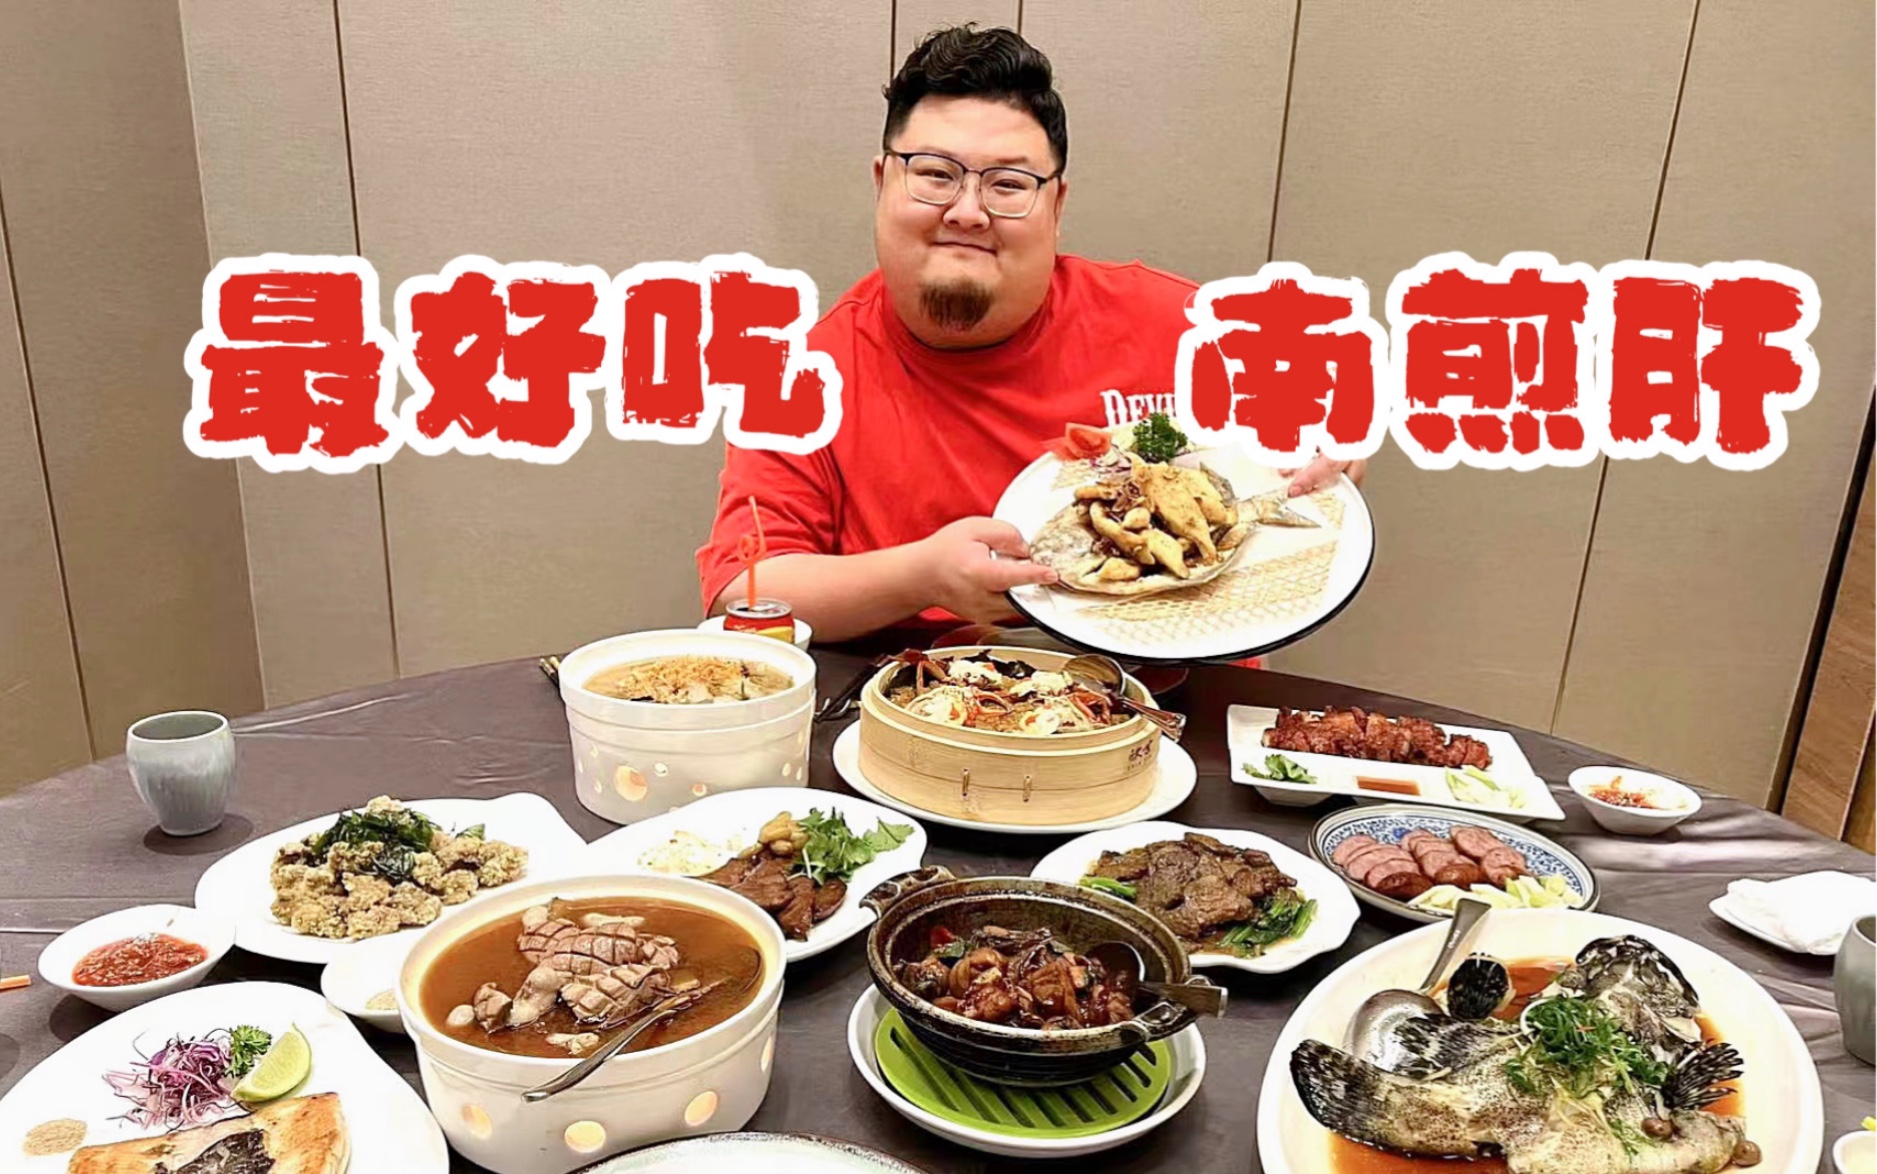 花3000试试厦门台湾菜的天花板，只要女儿爱吃就值了～～～